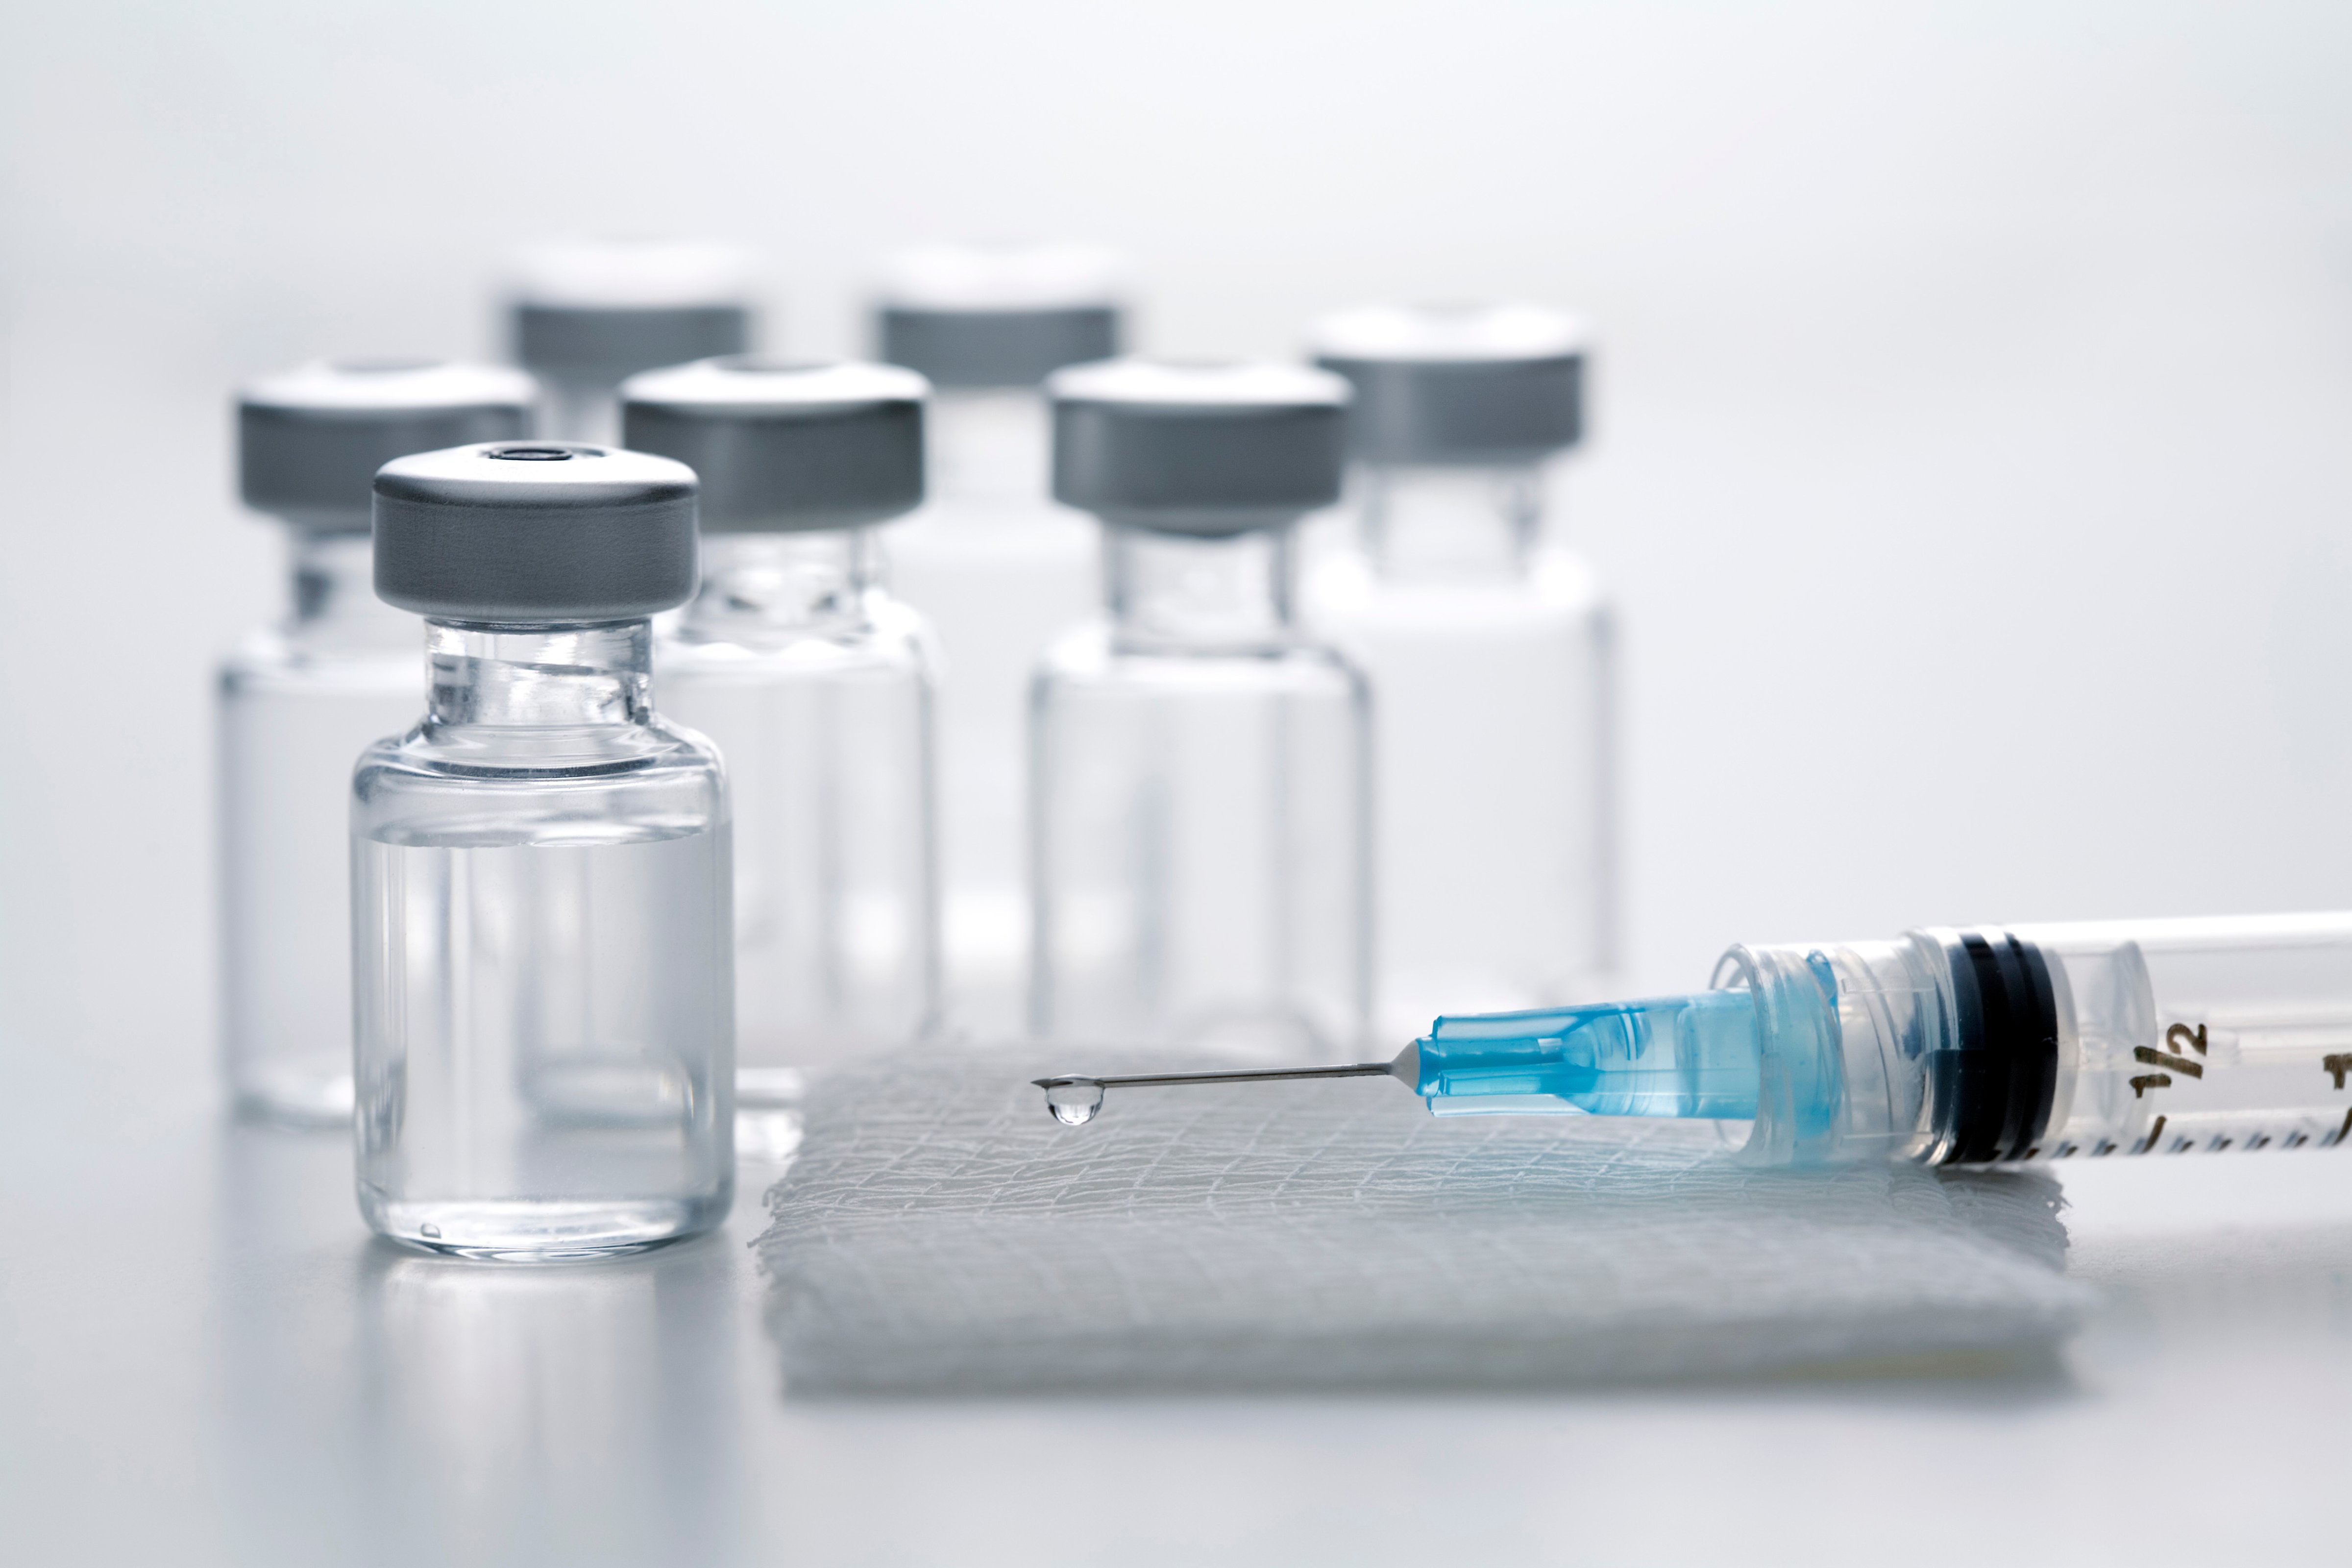 Syringe on gauze pad with vaccine bottles